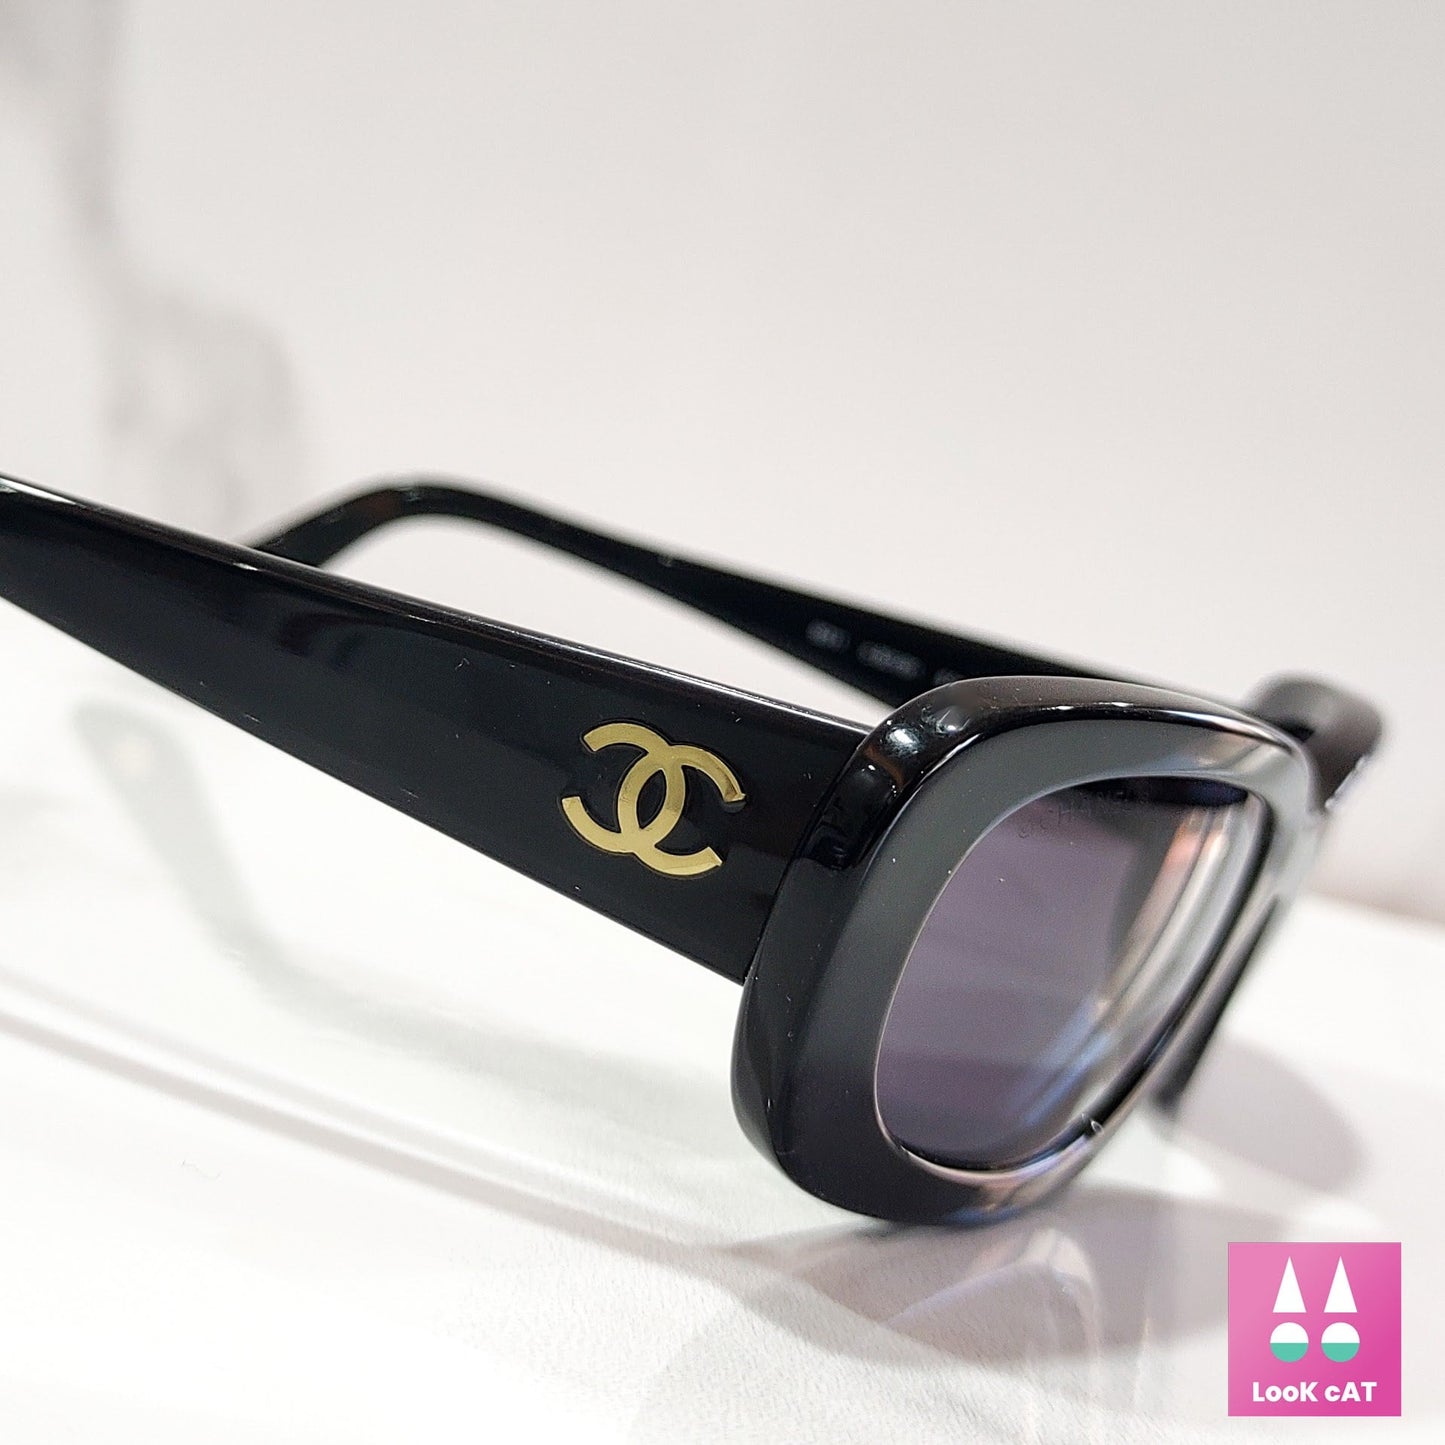 Chanel modello 5011 occhiale da sole vintage lunetta tonalità brille anni '90